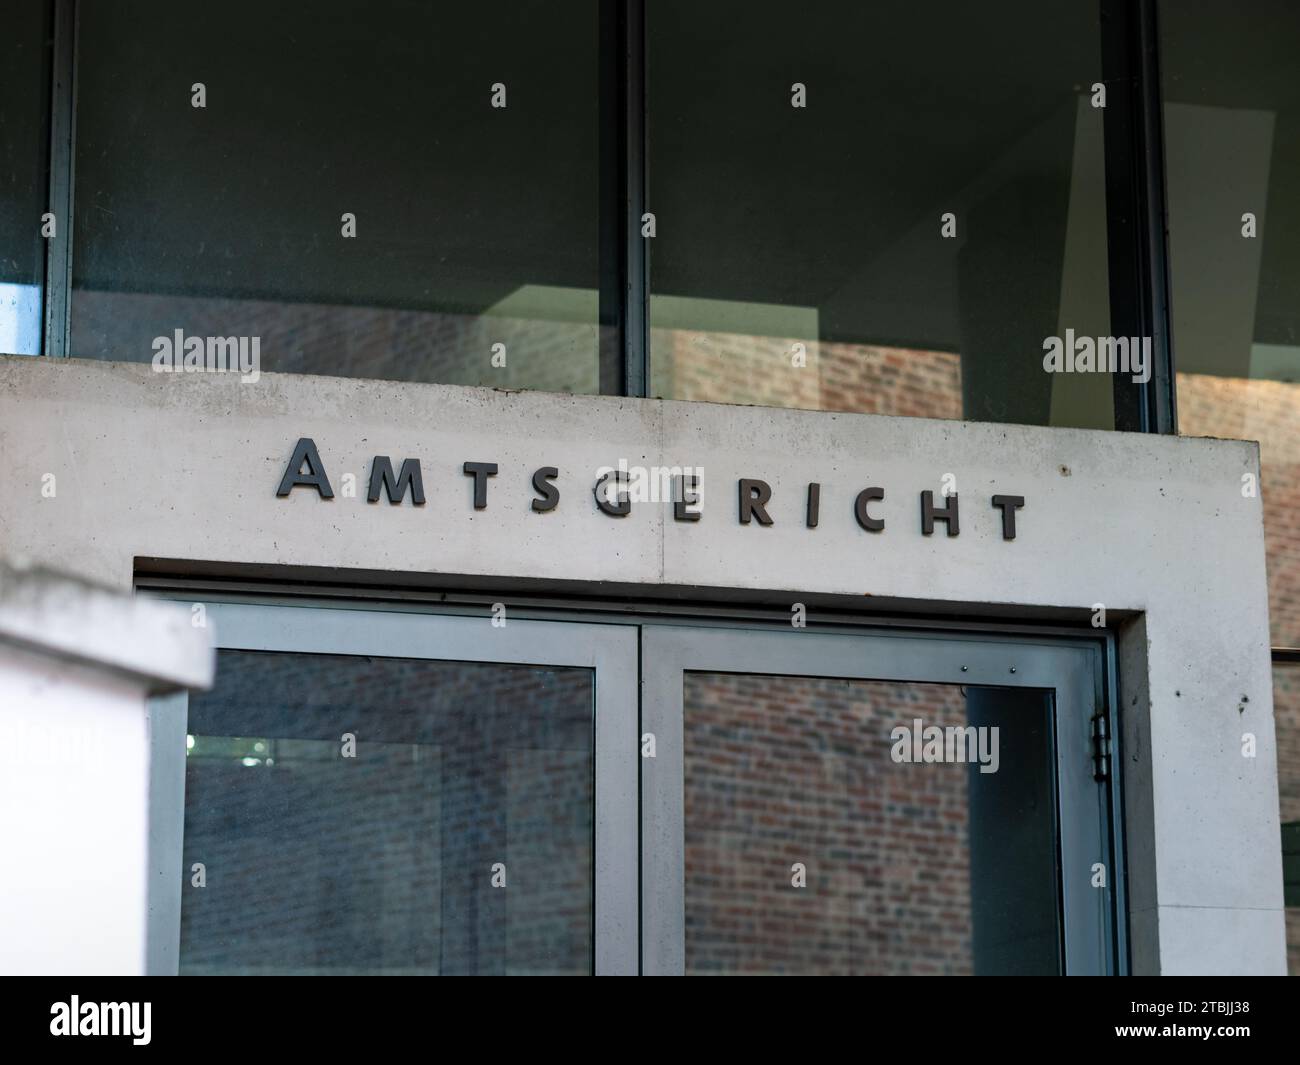 Panneau Amtsgericht (tribunal local) au-dessus de l'entrée du bâtiment. C'est le niveau le plus bas de l'appareil judiciaire en Allemagne. Combattre un procès contre quelqu'un. Banque D'Images